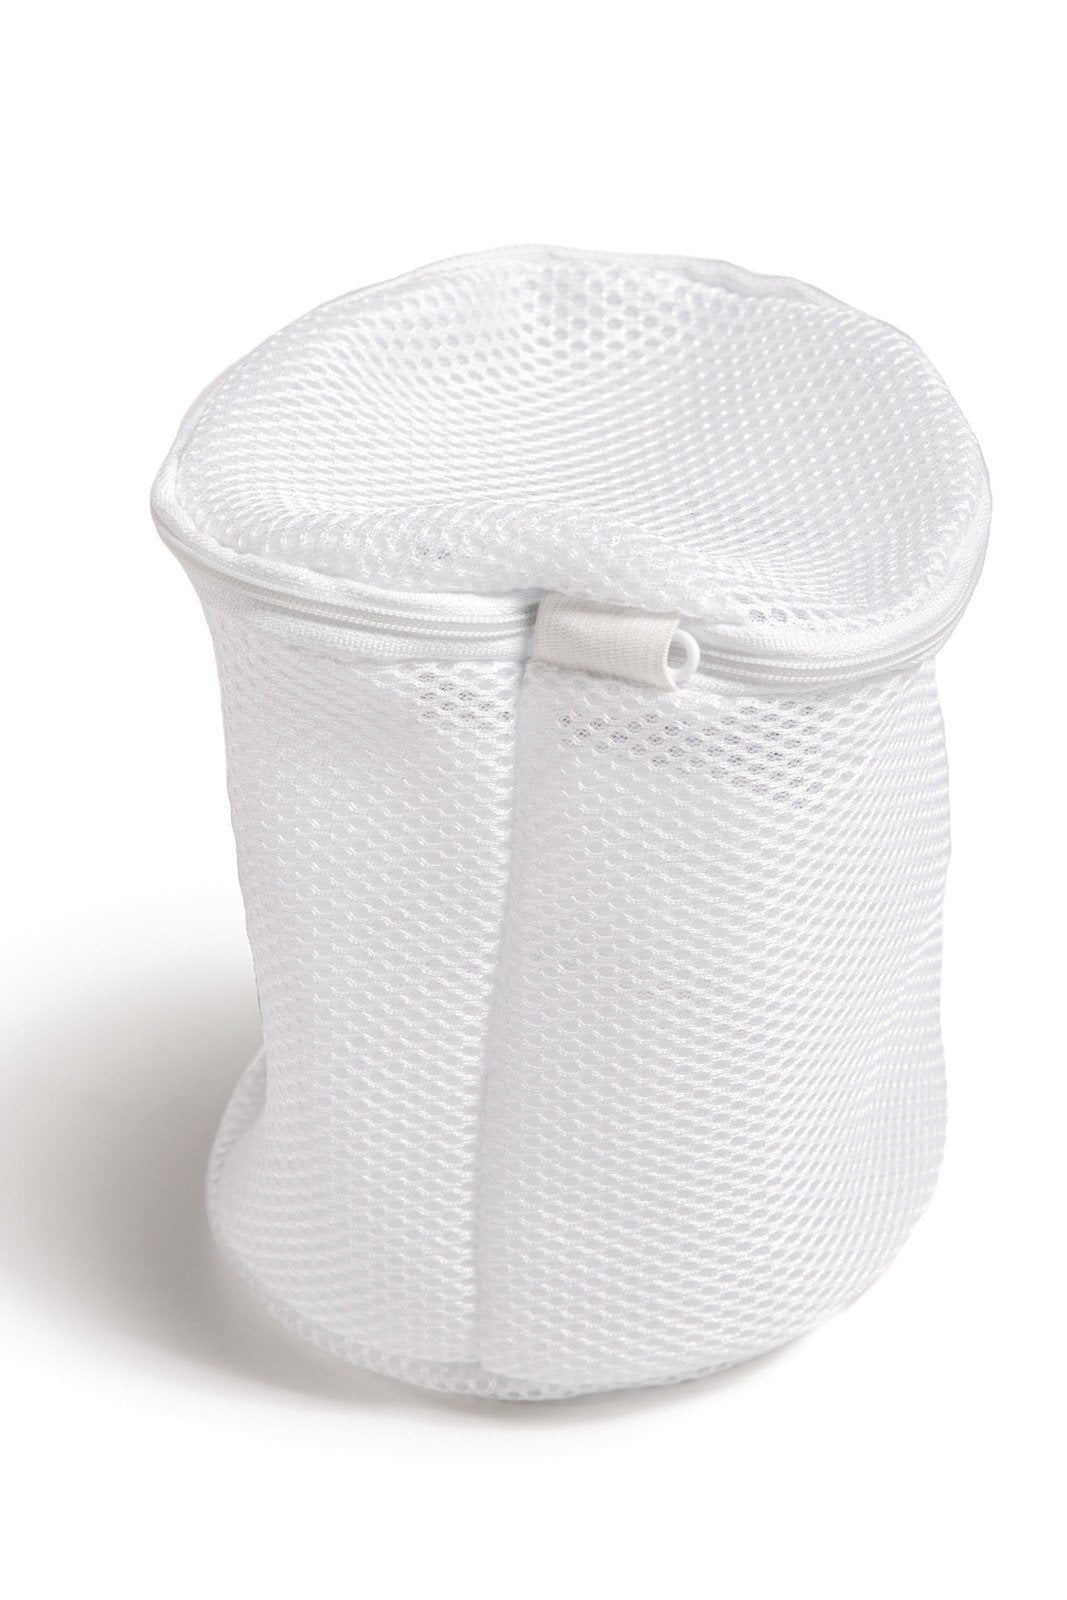 PROOF Mesh Double Zipper Laundry Bag - Belle Lacet Lingerie